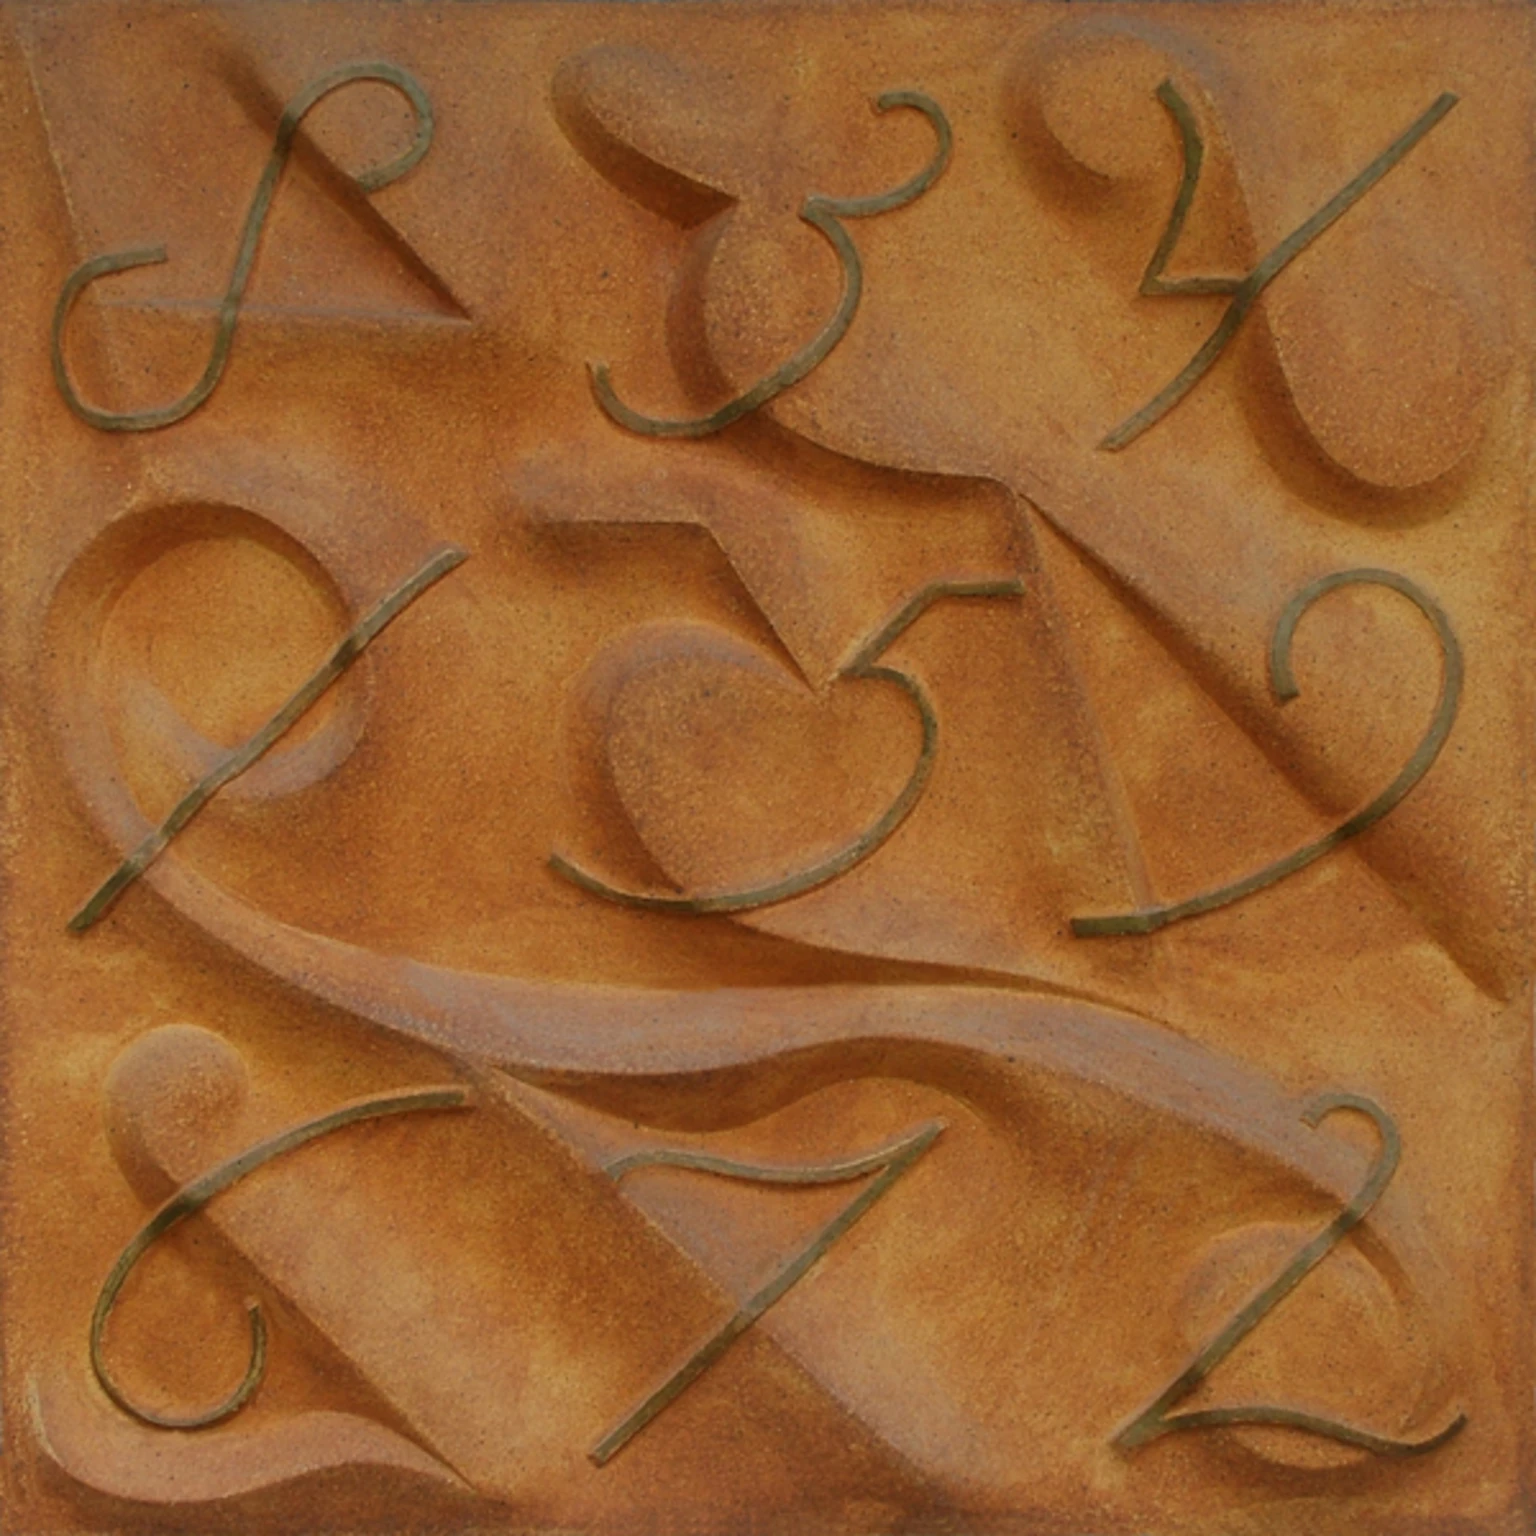 Számok, 2002 - pirogránit, 100 x 100 cm